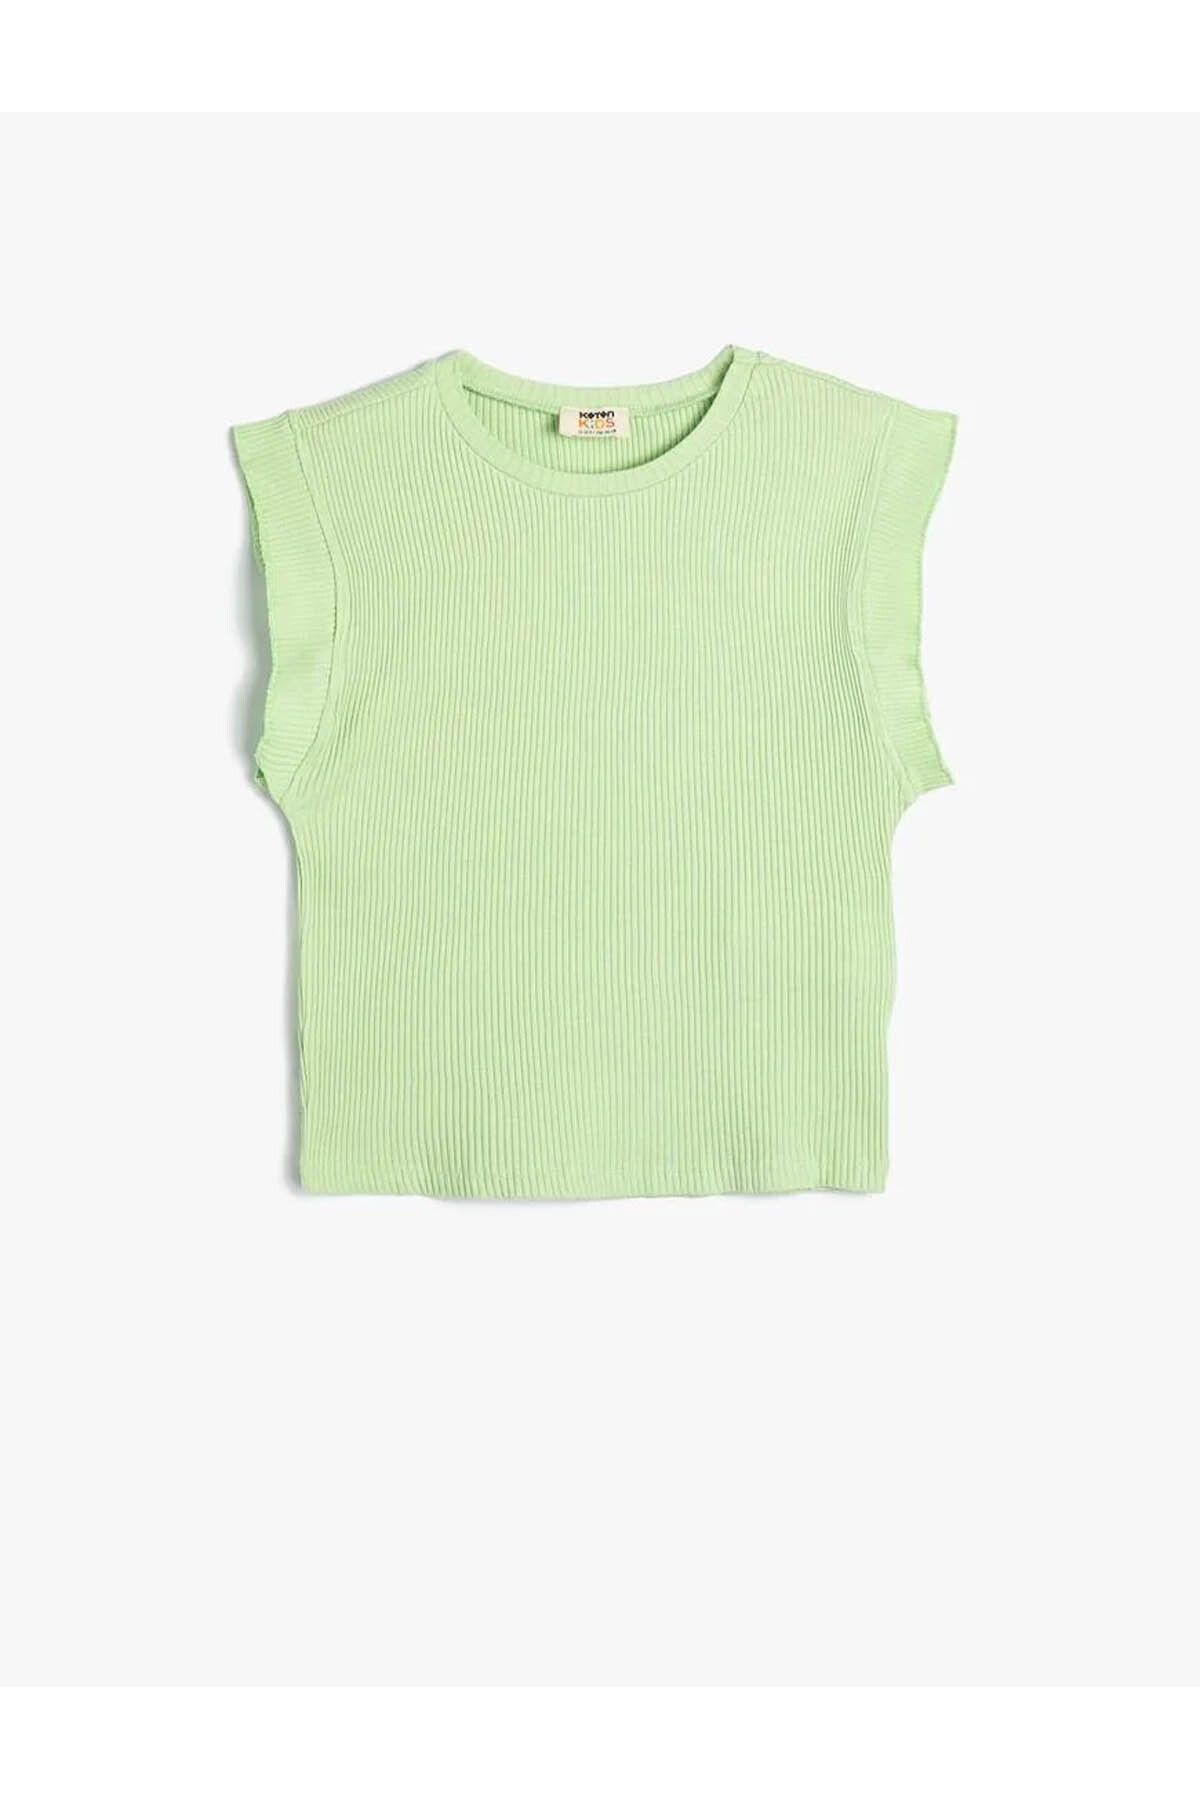 Koton Kız Çocuk T-shirt 4skg10137ak Yeşil